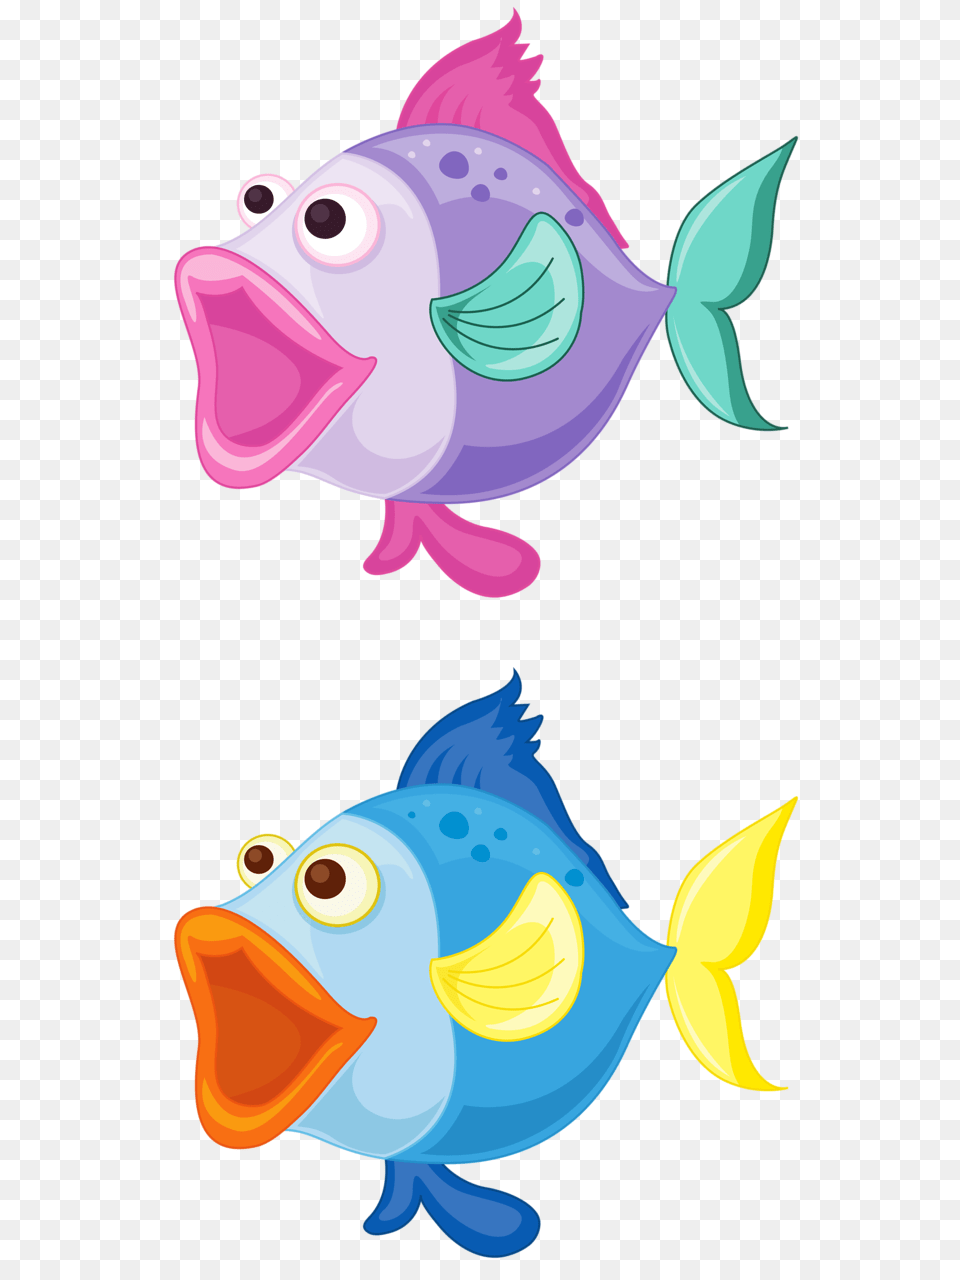 Fish Fish Fish Art And Cartoon Fish, Animal, Sea Life, Baby, Person Free Transparent Png